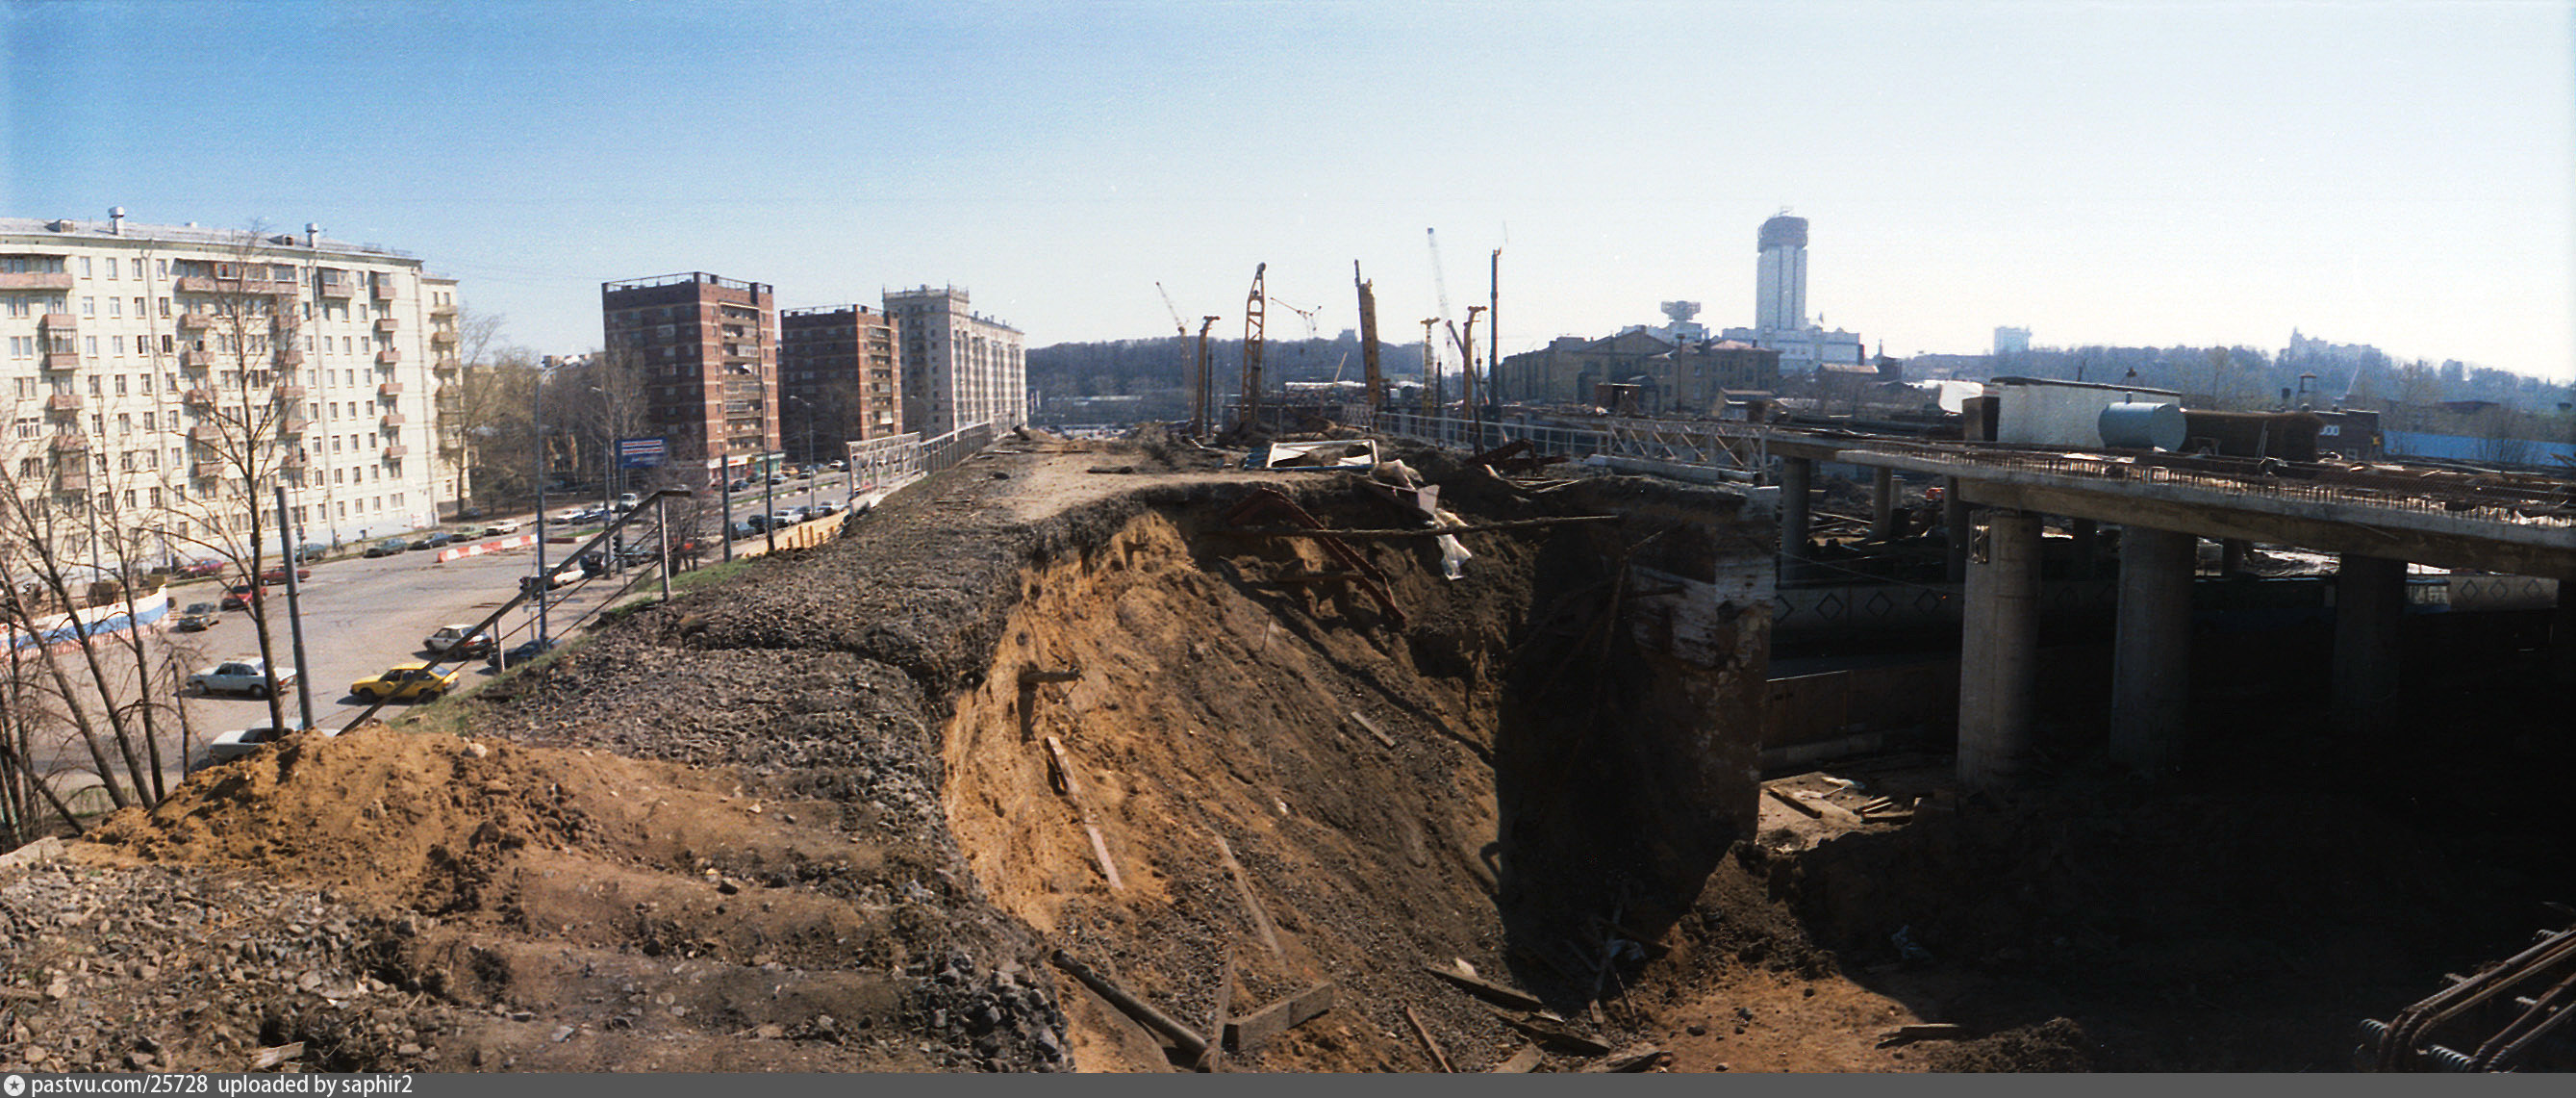 Вступила в 2000 году. Строительство третьего транспортного кольца. Москва 2000 год. Стройка в 2000. Москва в 2000-е годы.